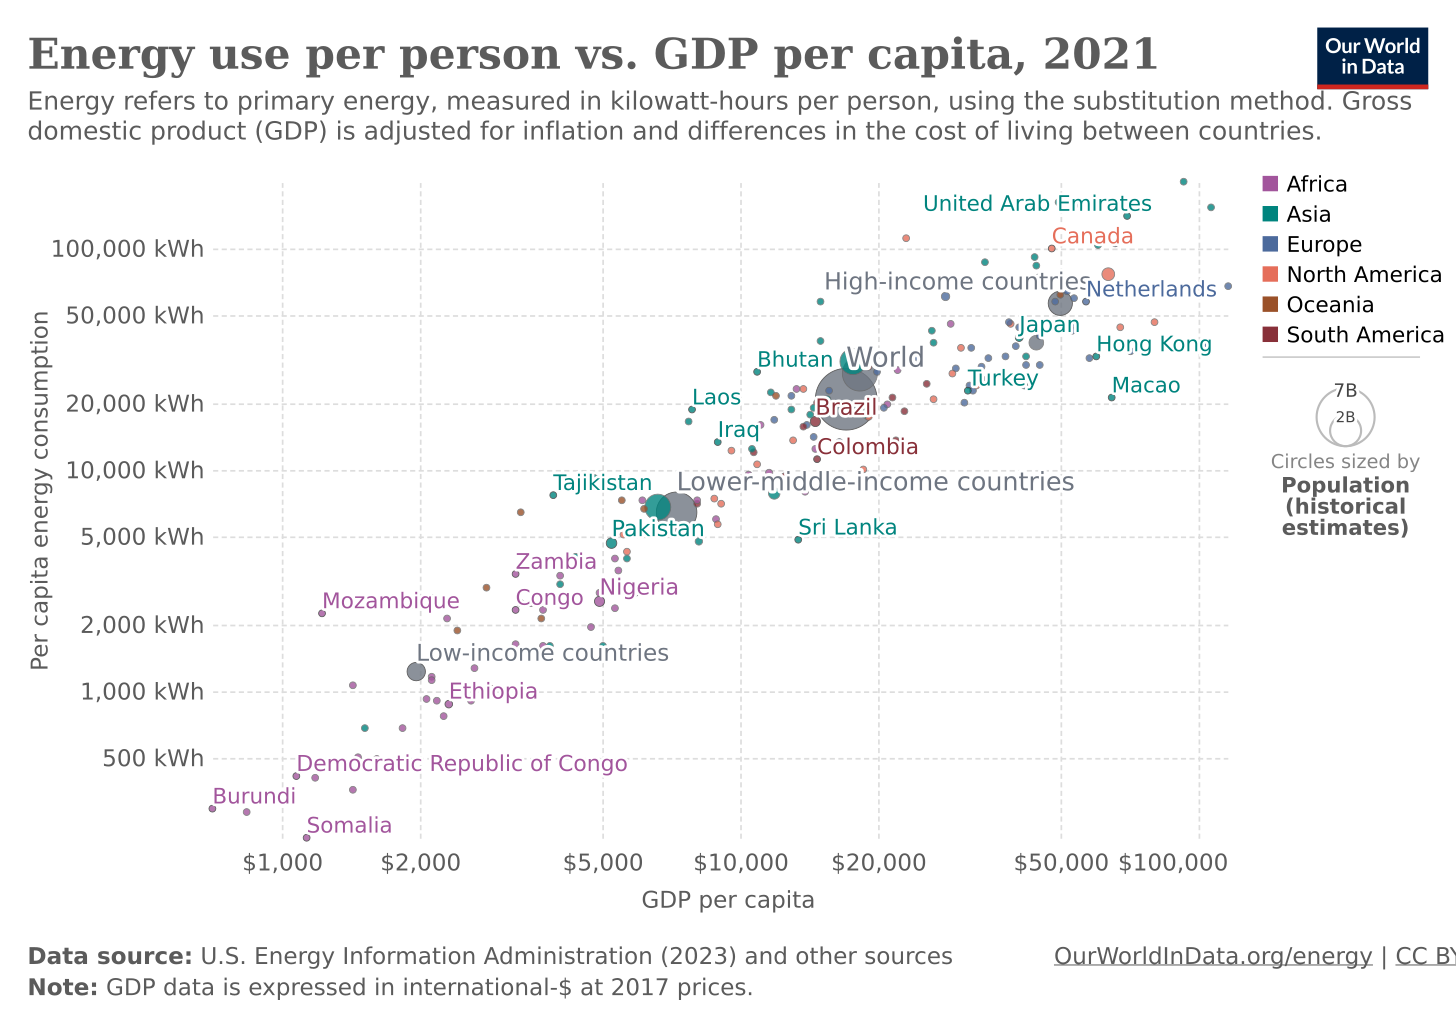 Energy use per person vs. GDP per capita - Our World in Data